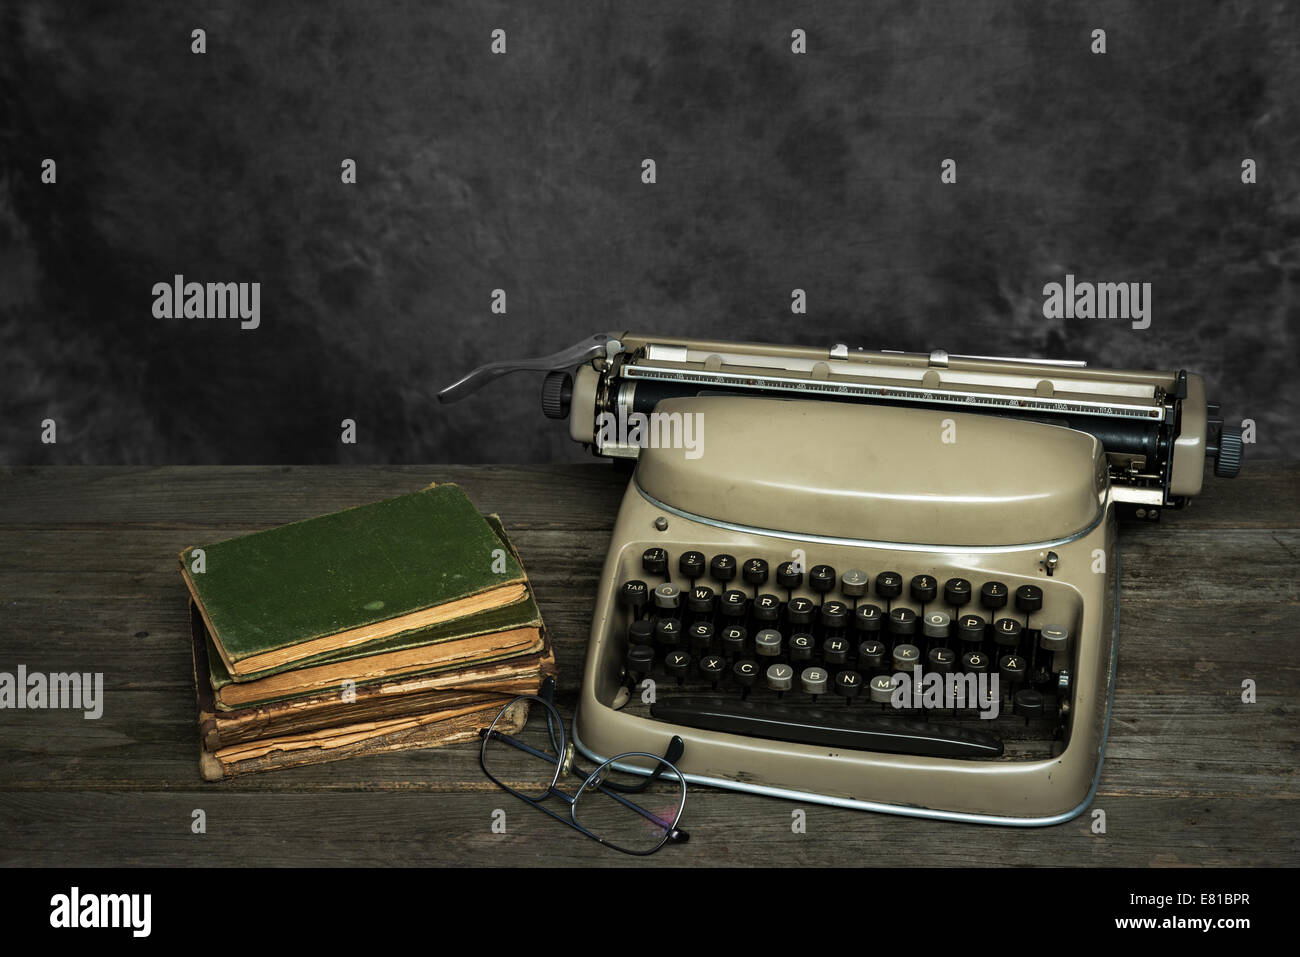 Máquina de escribir, libros y gafas de lectura en un sucio escritorio Foto de stock